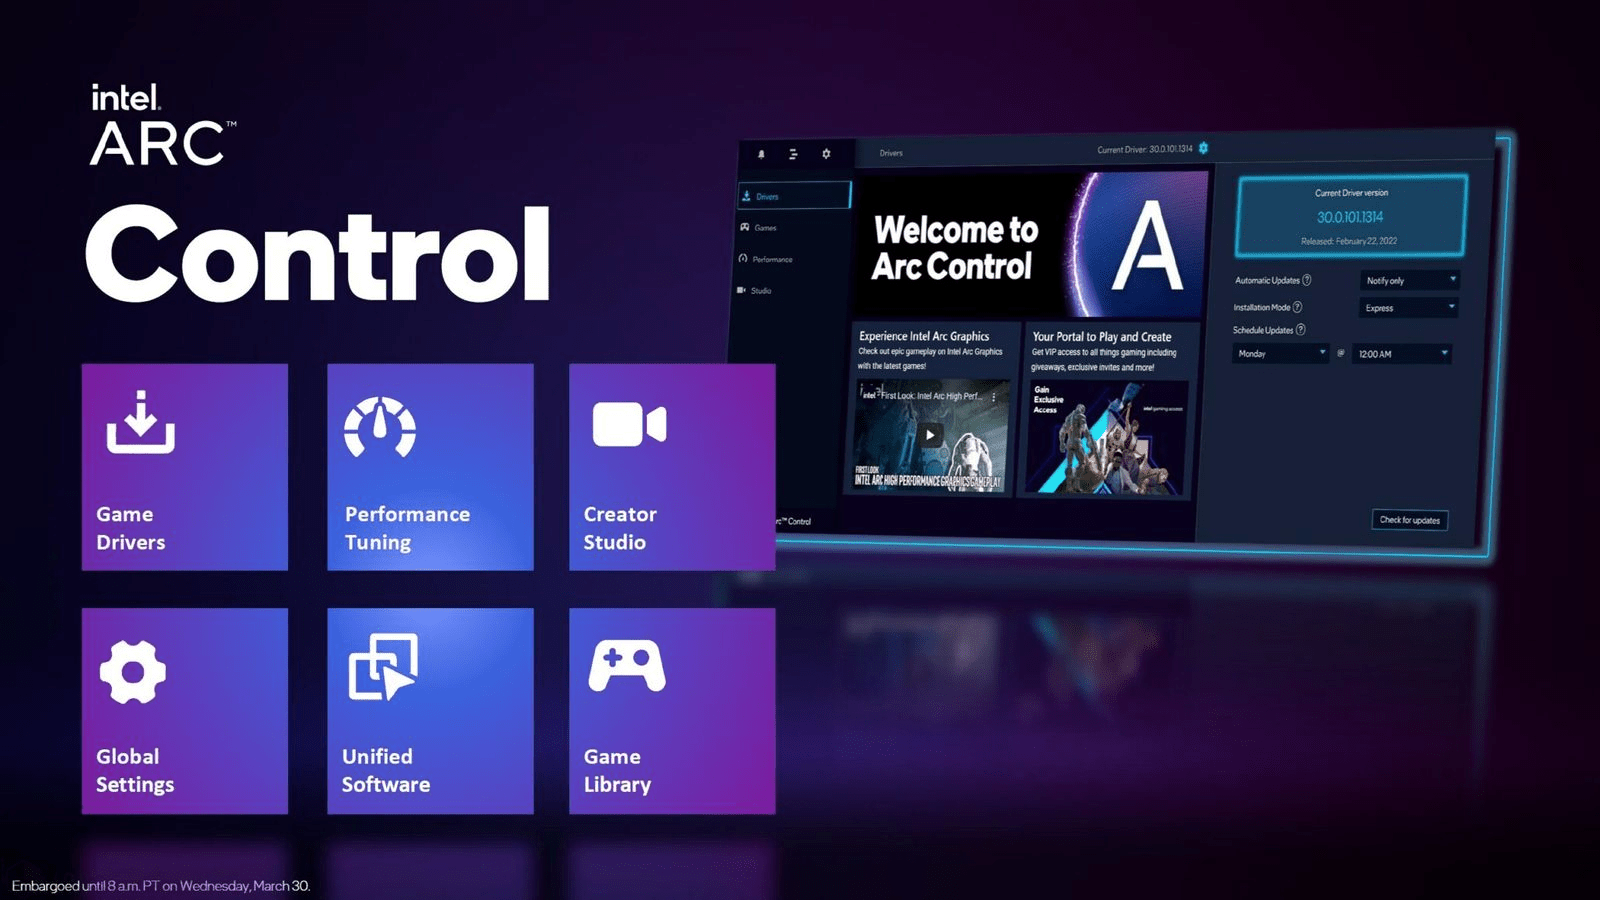 Intel Arc Control